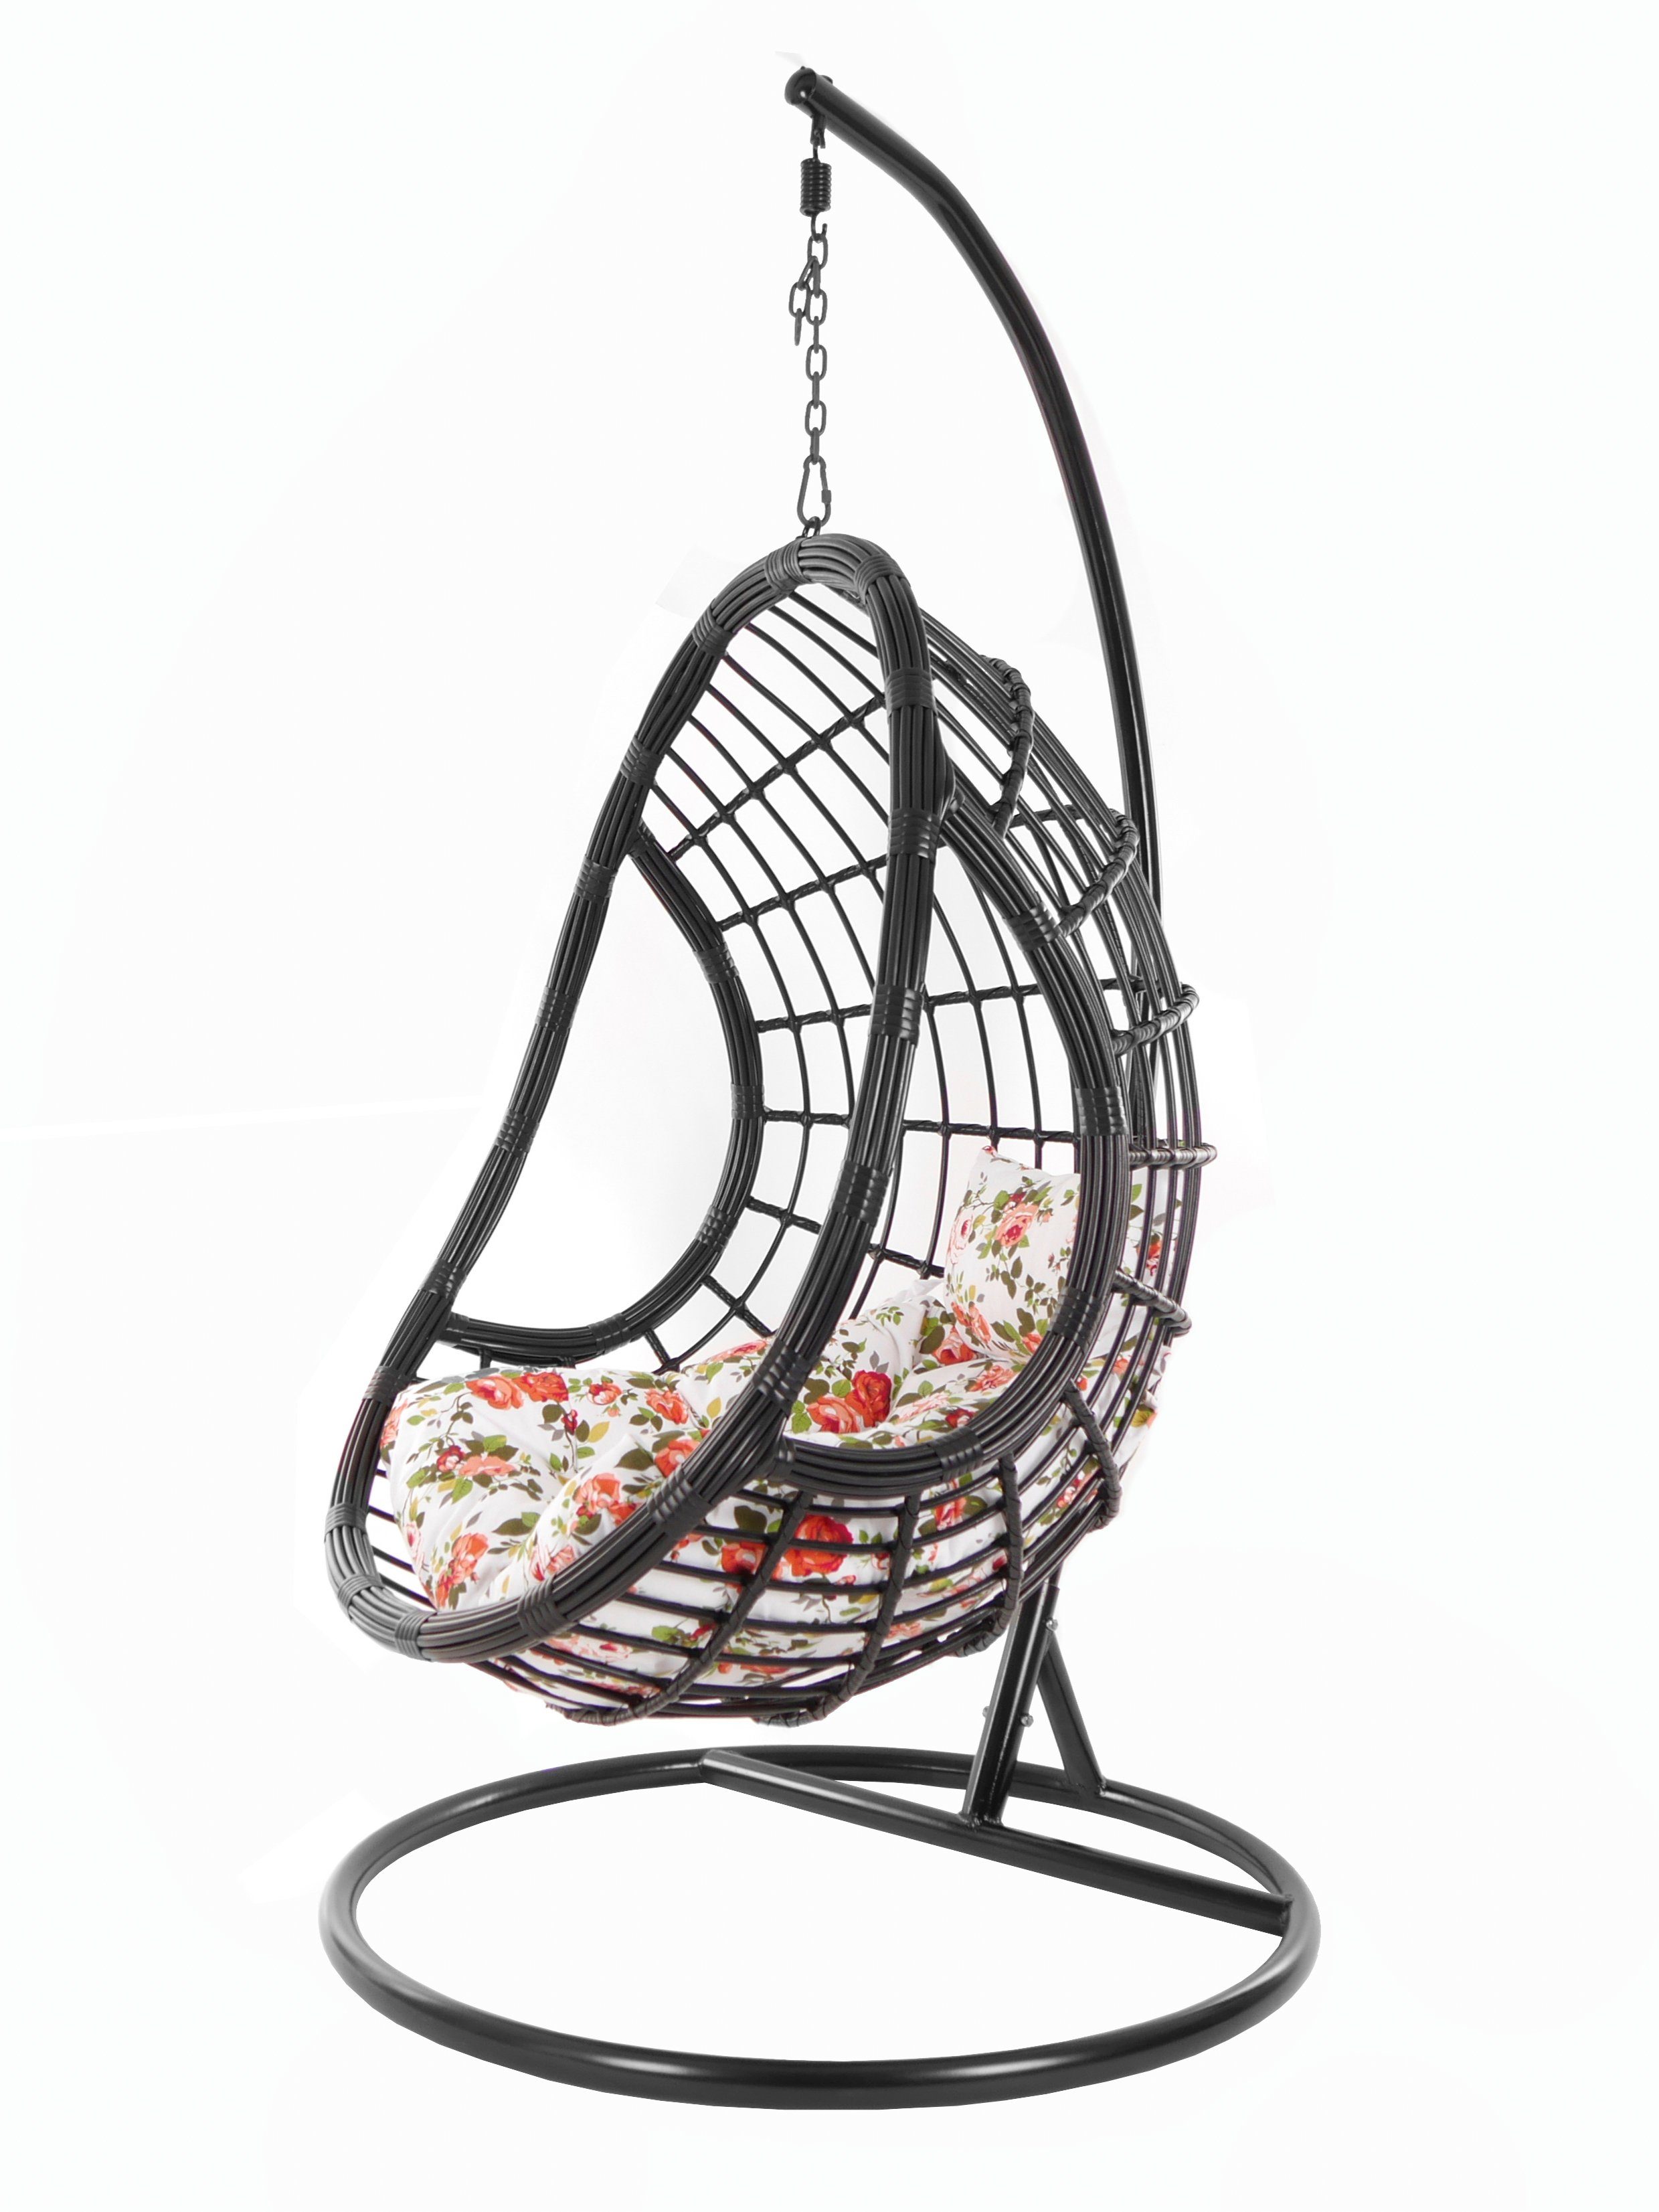 KIDEO Hängesessel PALMANOVA black, Swing rosen Gestell Loungemöbel, Kissen, schwarz, roses) und Design Chair, Schwebesessel, edles (3761 mit Hängesessel